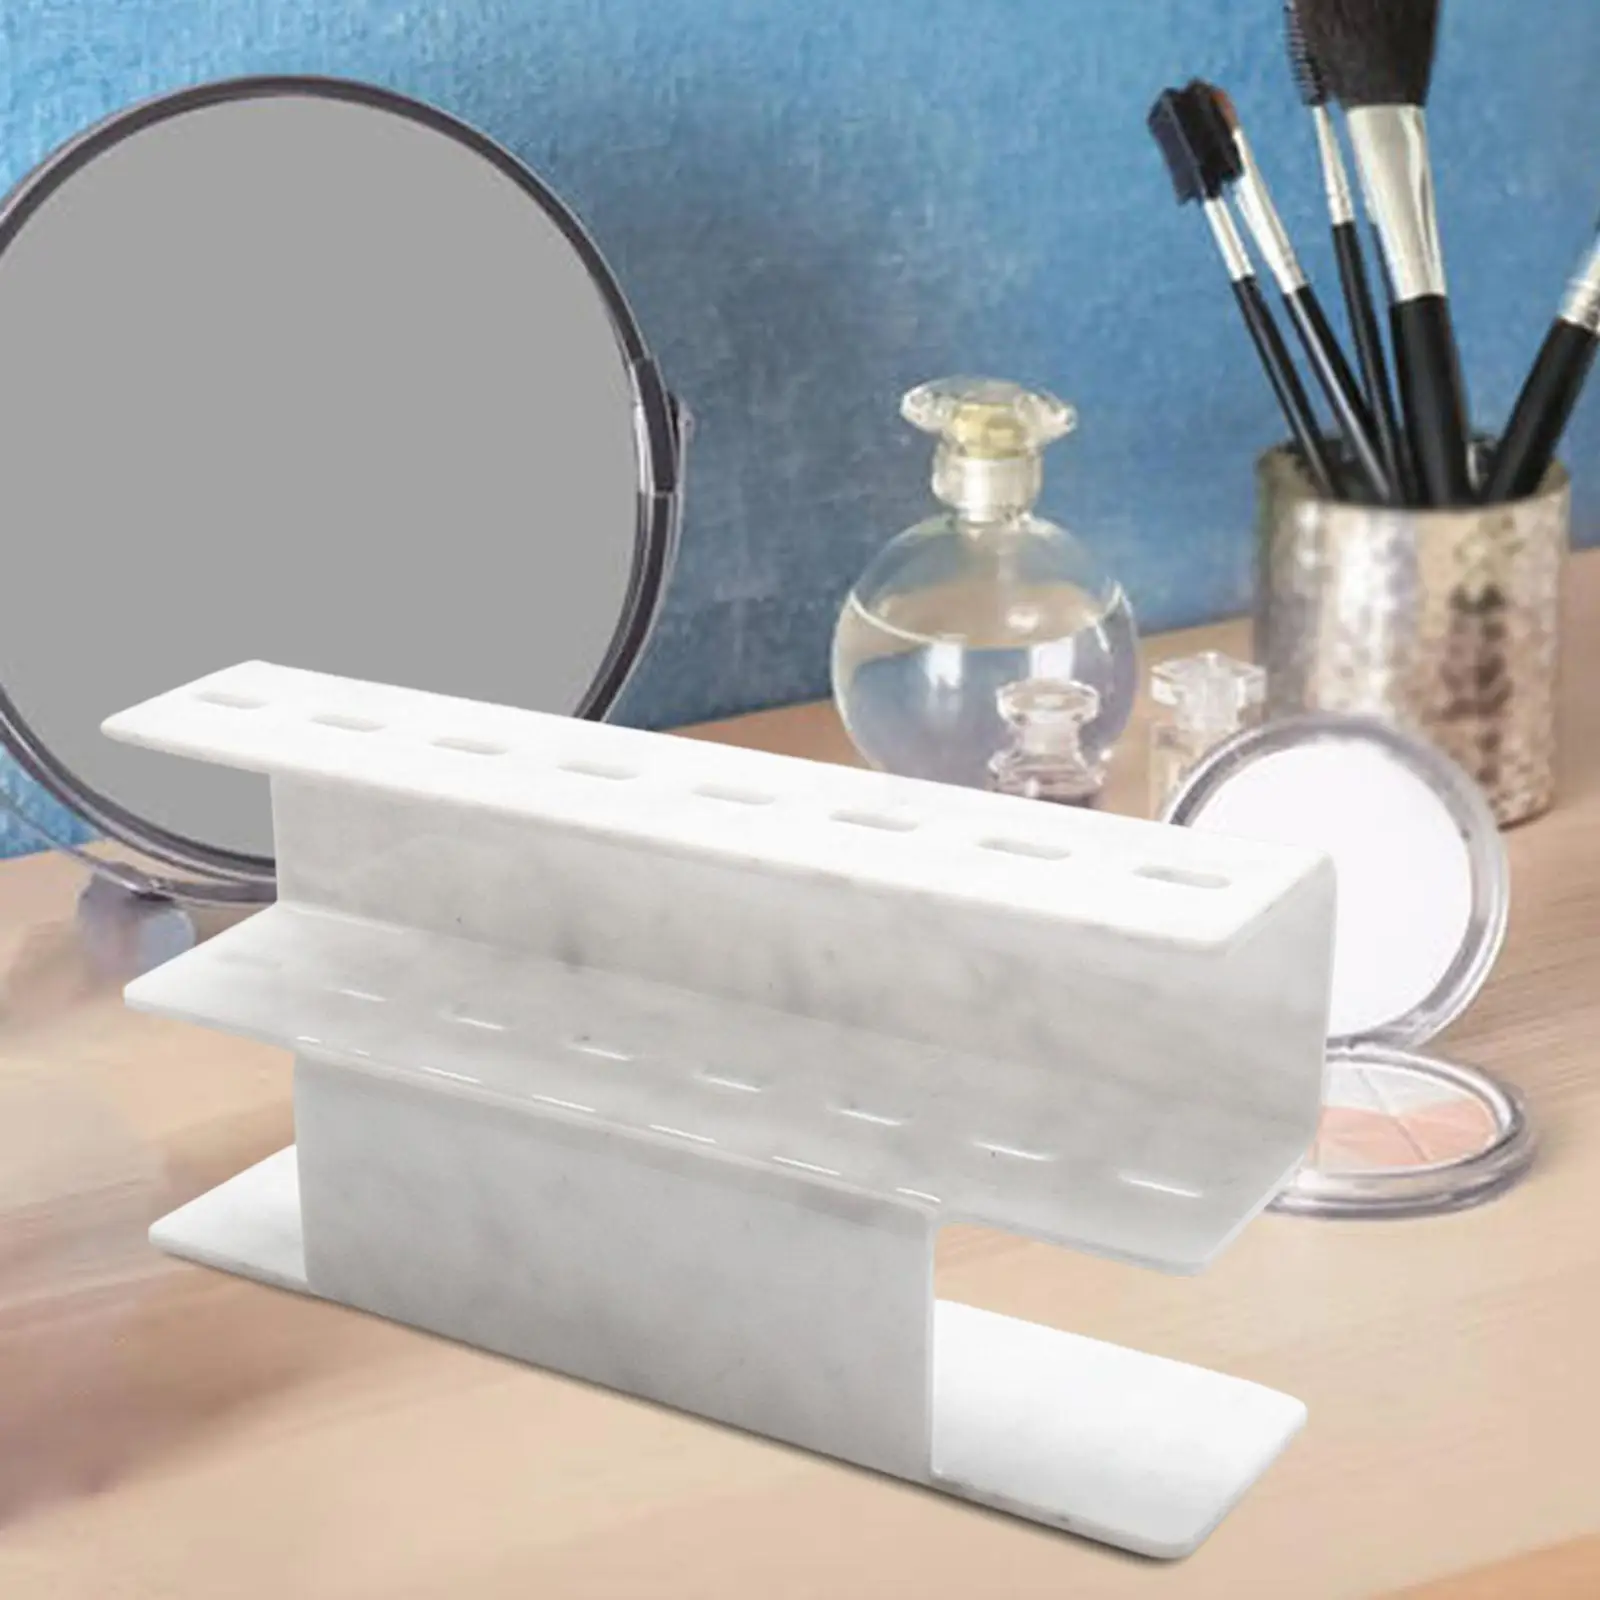 Acrylic Eyelash Grafting Tweezers Stand 8 Holes Makeup Accessories Tweezer Holder for Dresser